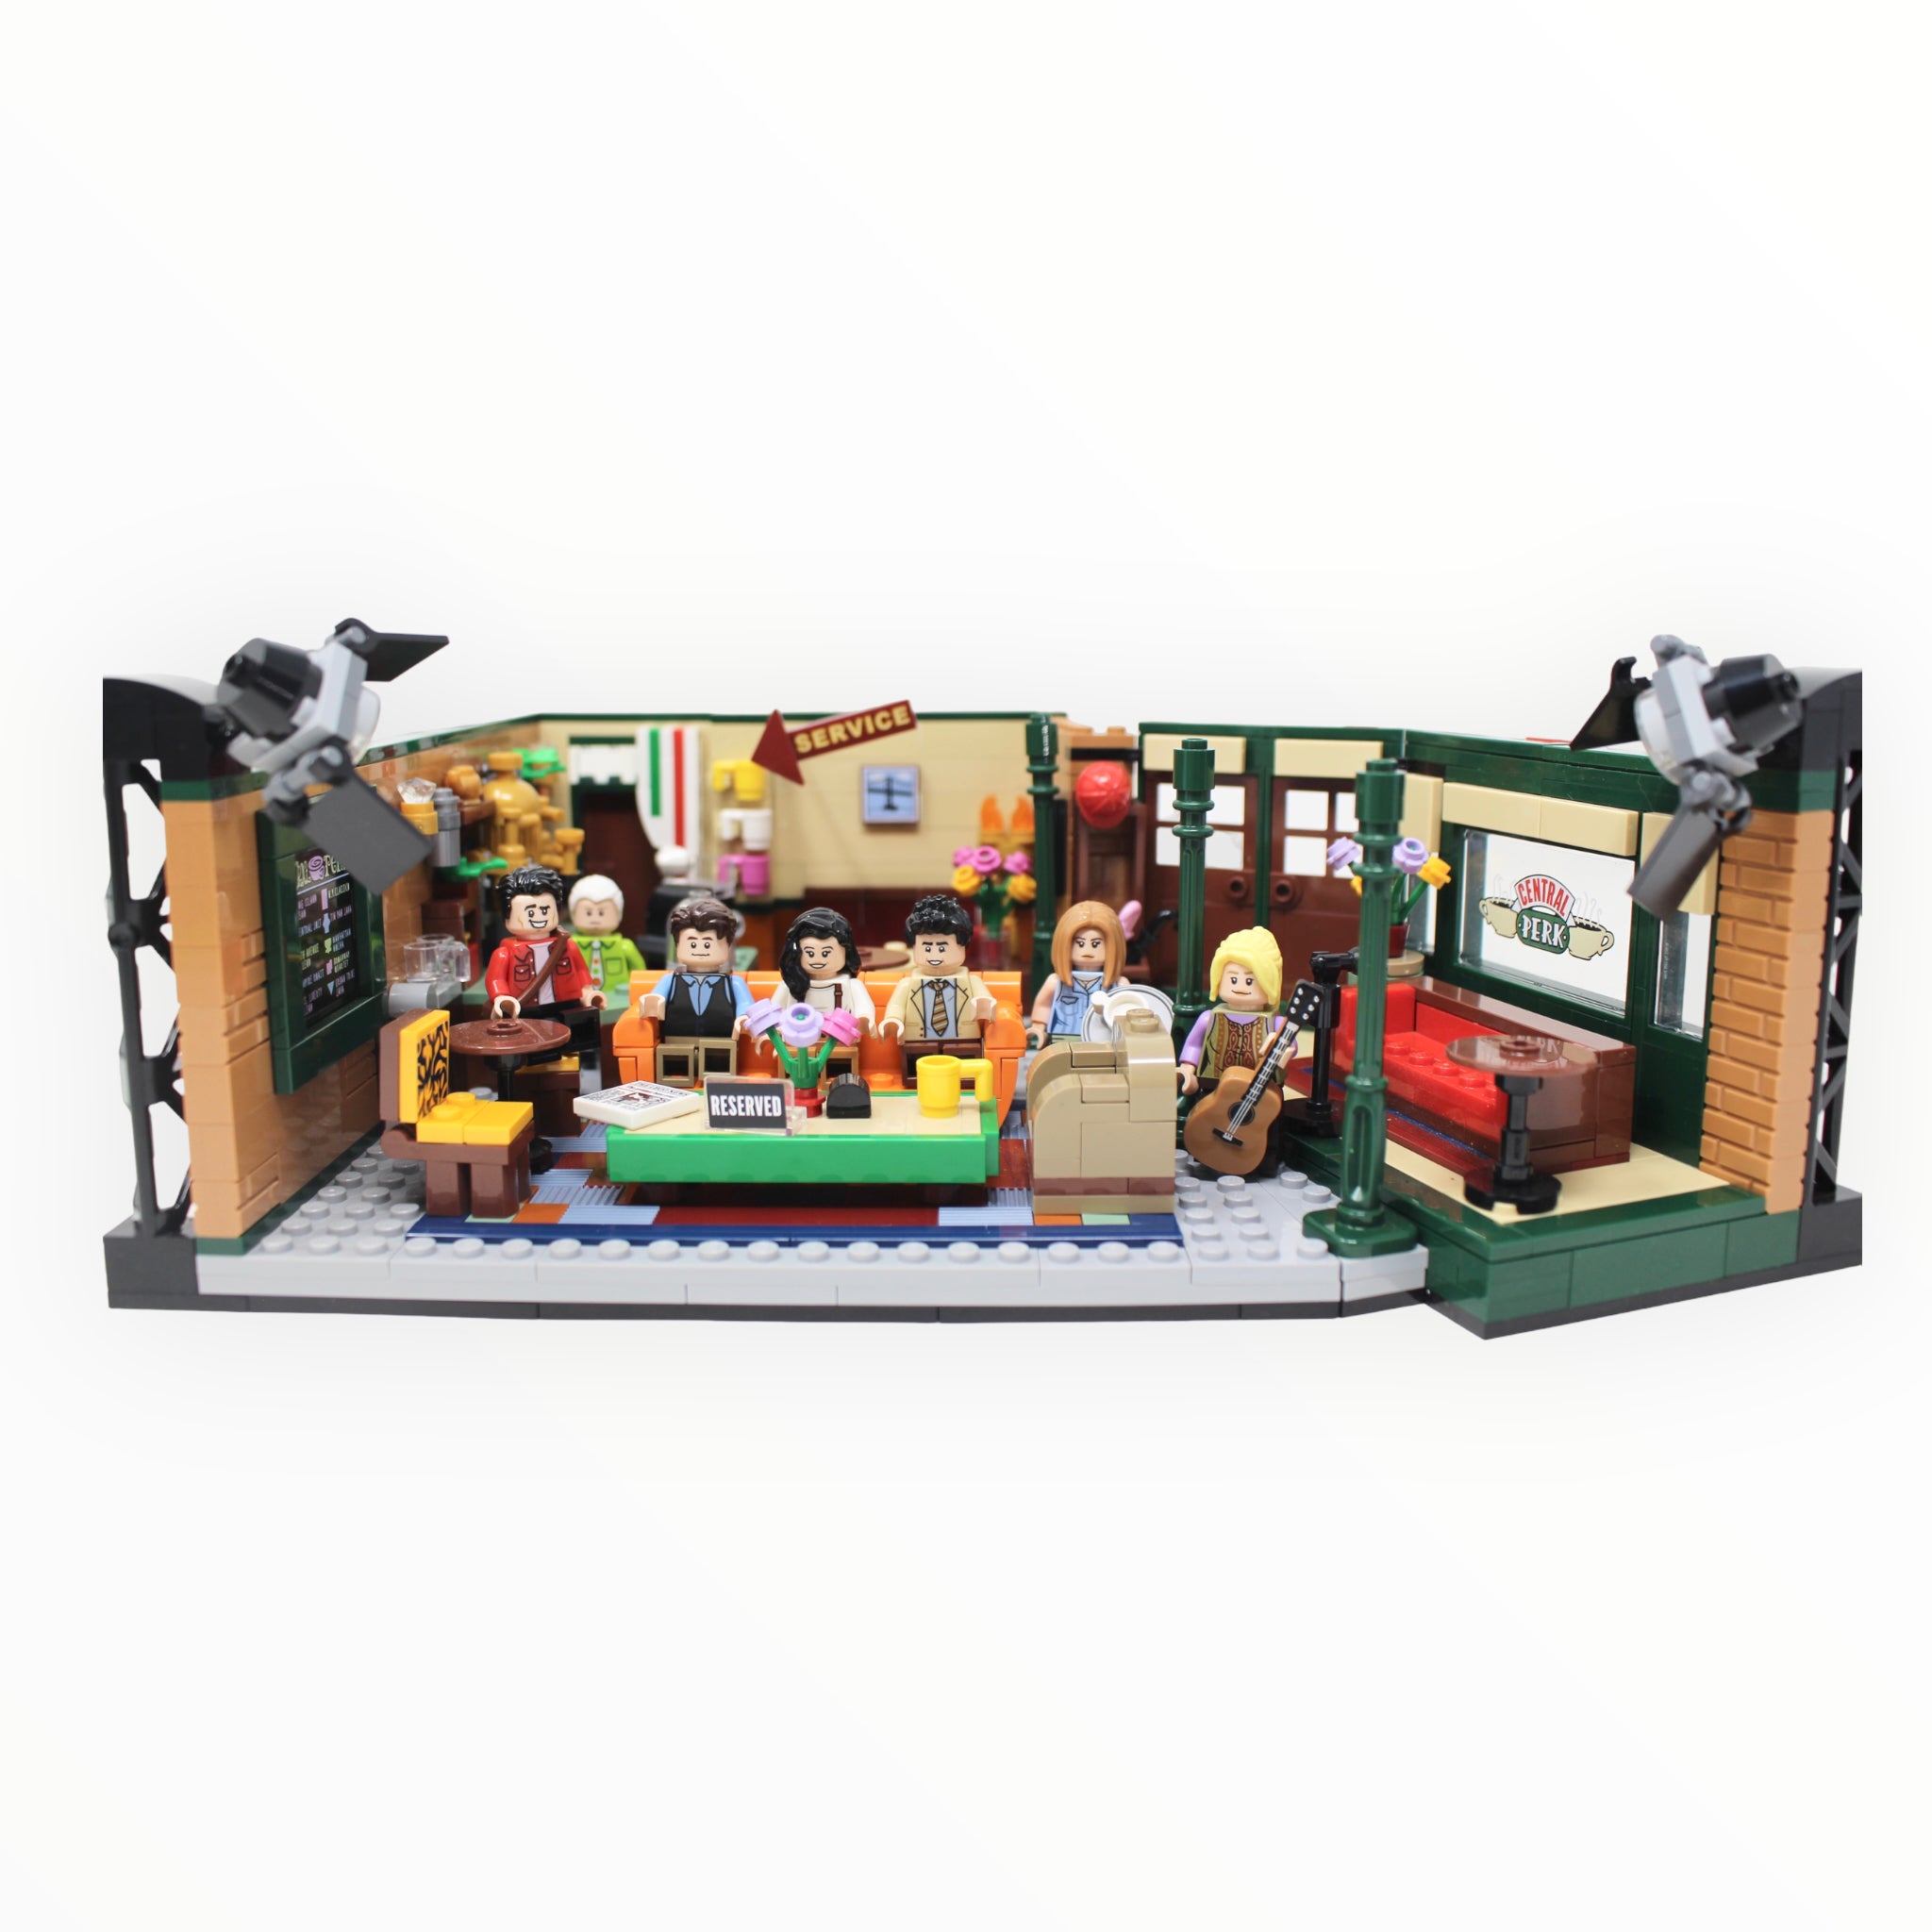 Lego - Central Perk - 21319, Ideas, Lego